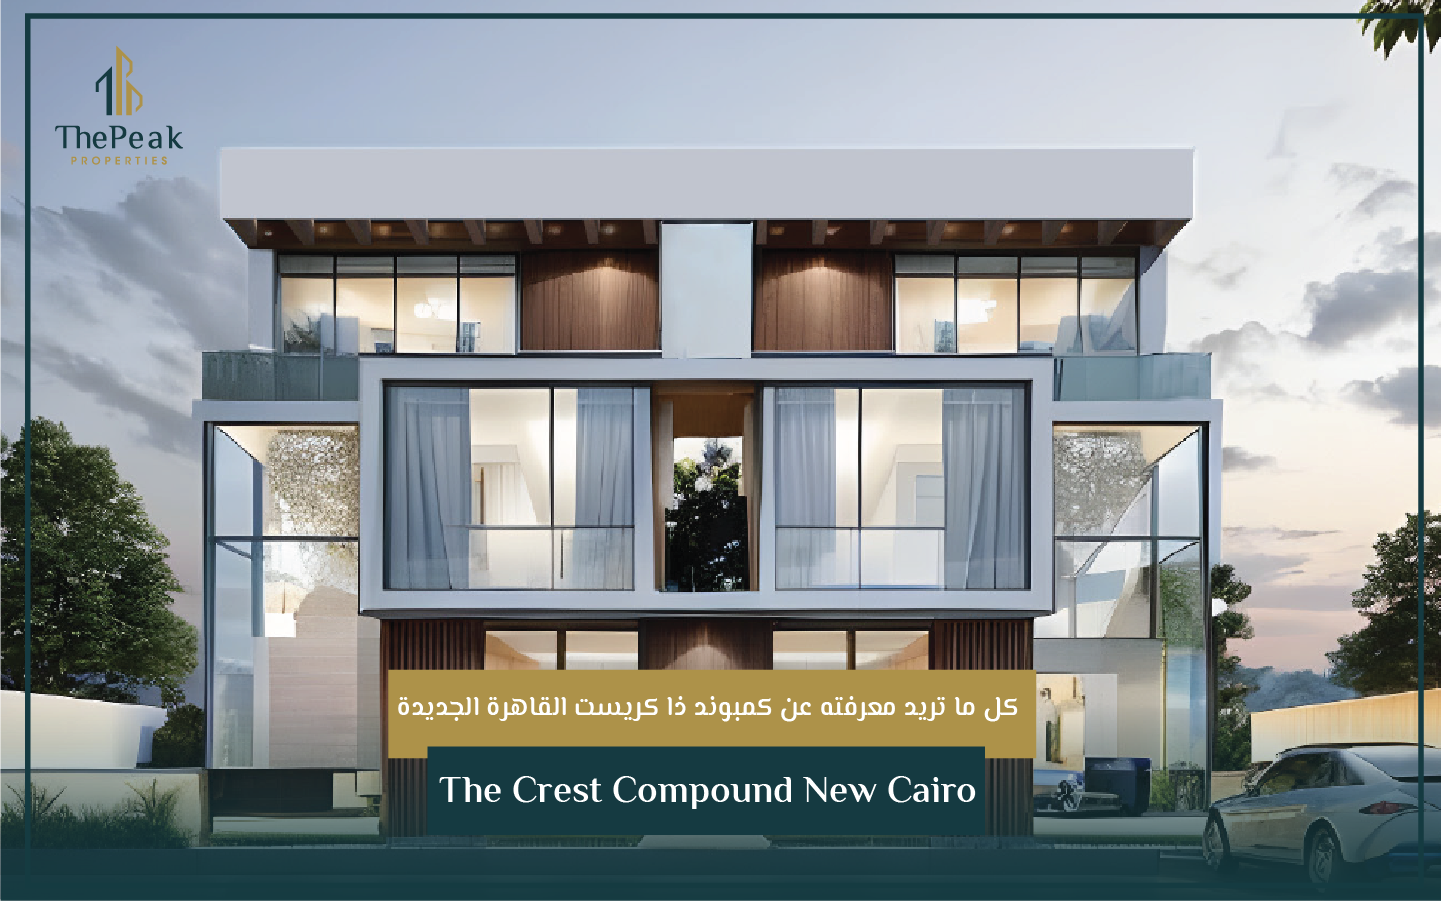 "شقة للبيع بالتقسيط في التجمع الخامس  مساحة 175 متر  مقدم 5 % و تقسيط يصل إلي 7 سنوات  في مشروع The Crest Compound New Cairo" | THE PEAK PROPERTIES